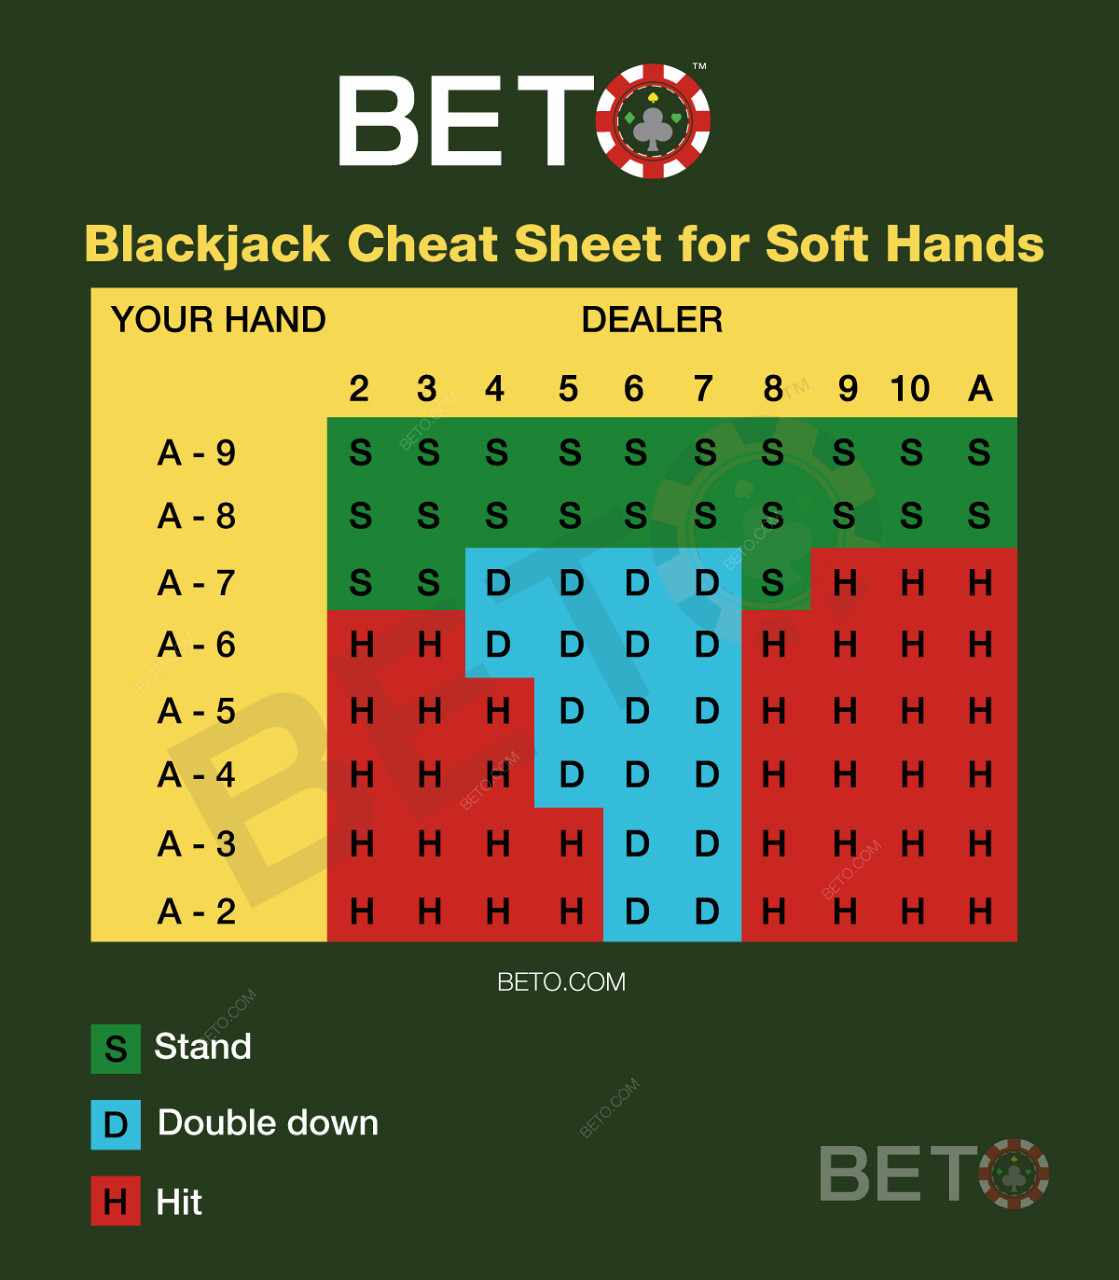 Blackjacková tabuľka pre soft-hands v blackjacku